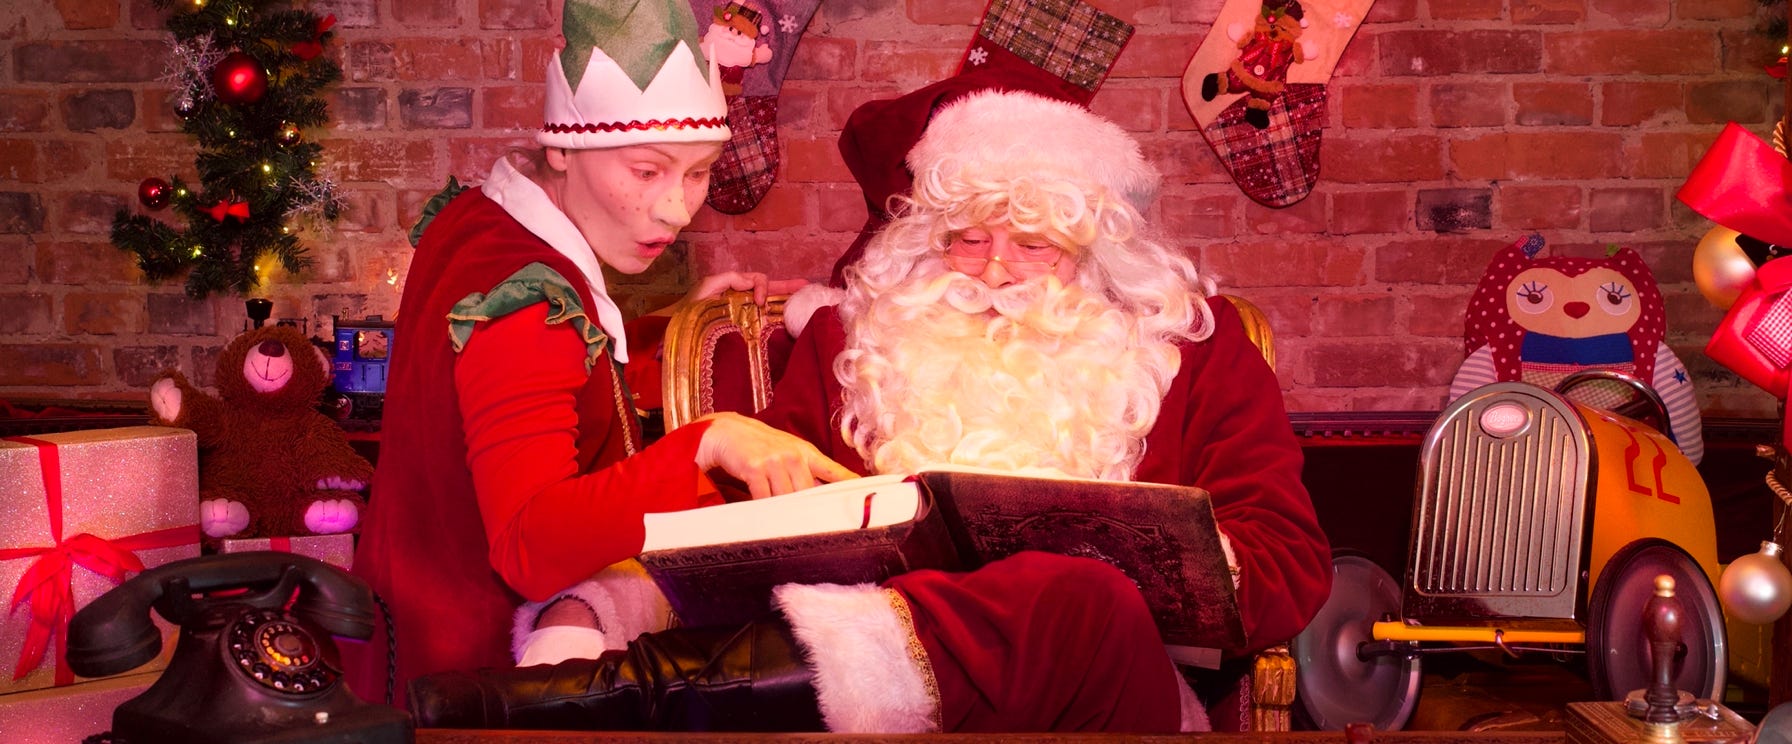 Weihnachten im Theater Liebreiz ist immer eine besondere Zeit denn dann dürfen der Heilige Nikolaus, der Weihnachtsmann und der Grinch wieder raus.